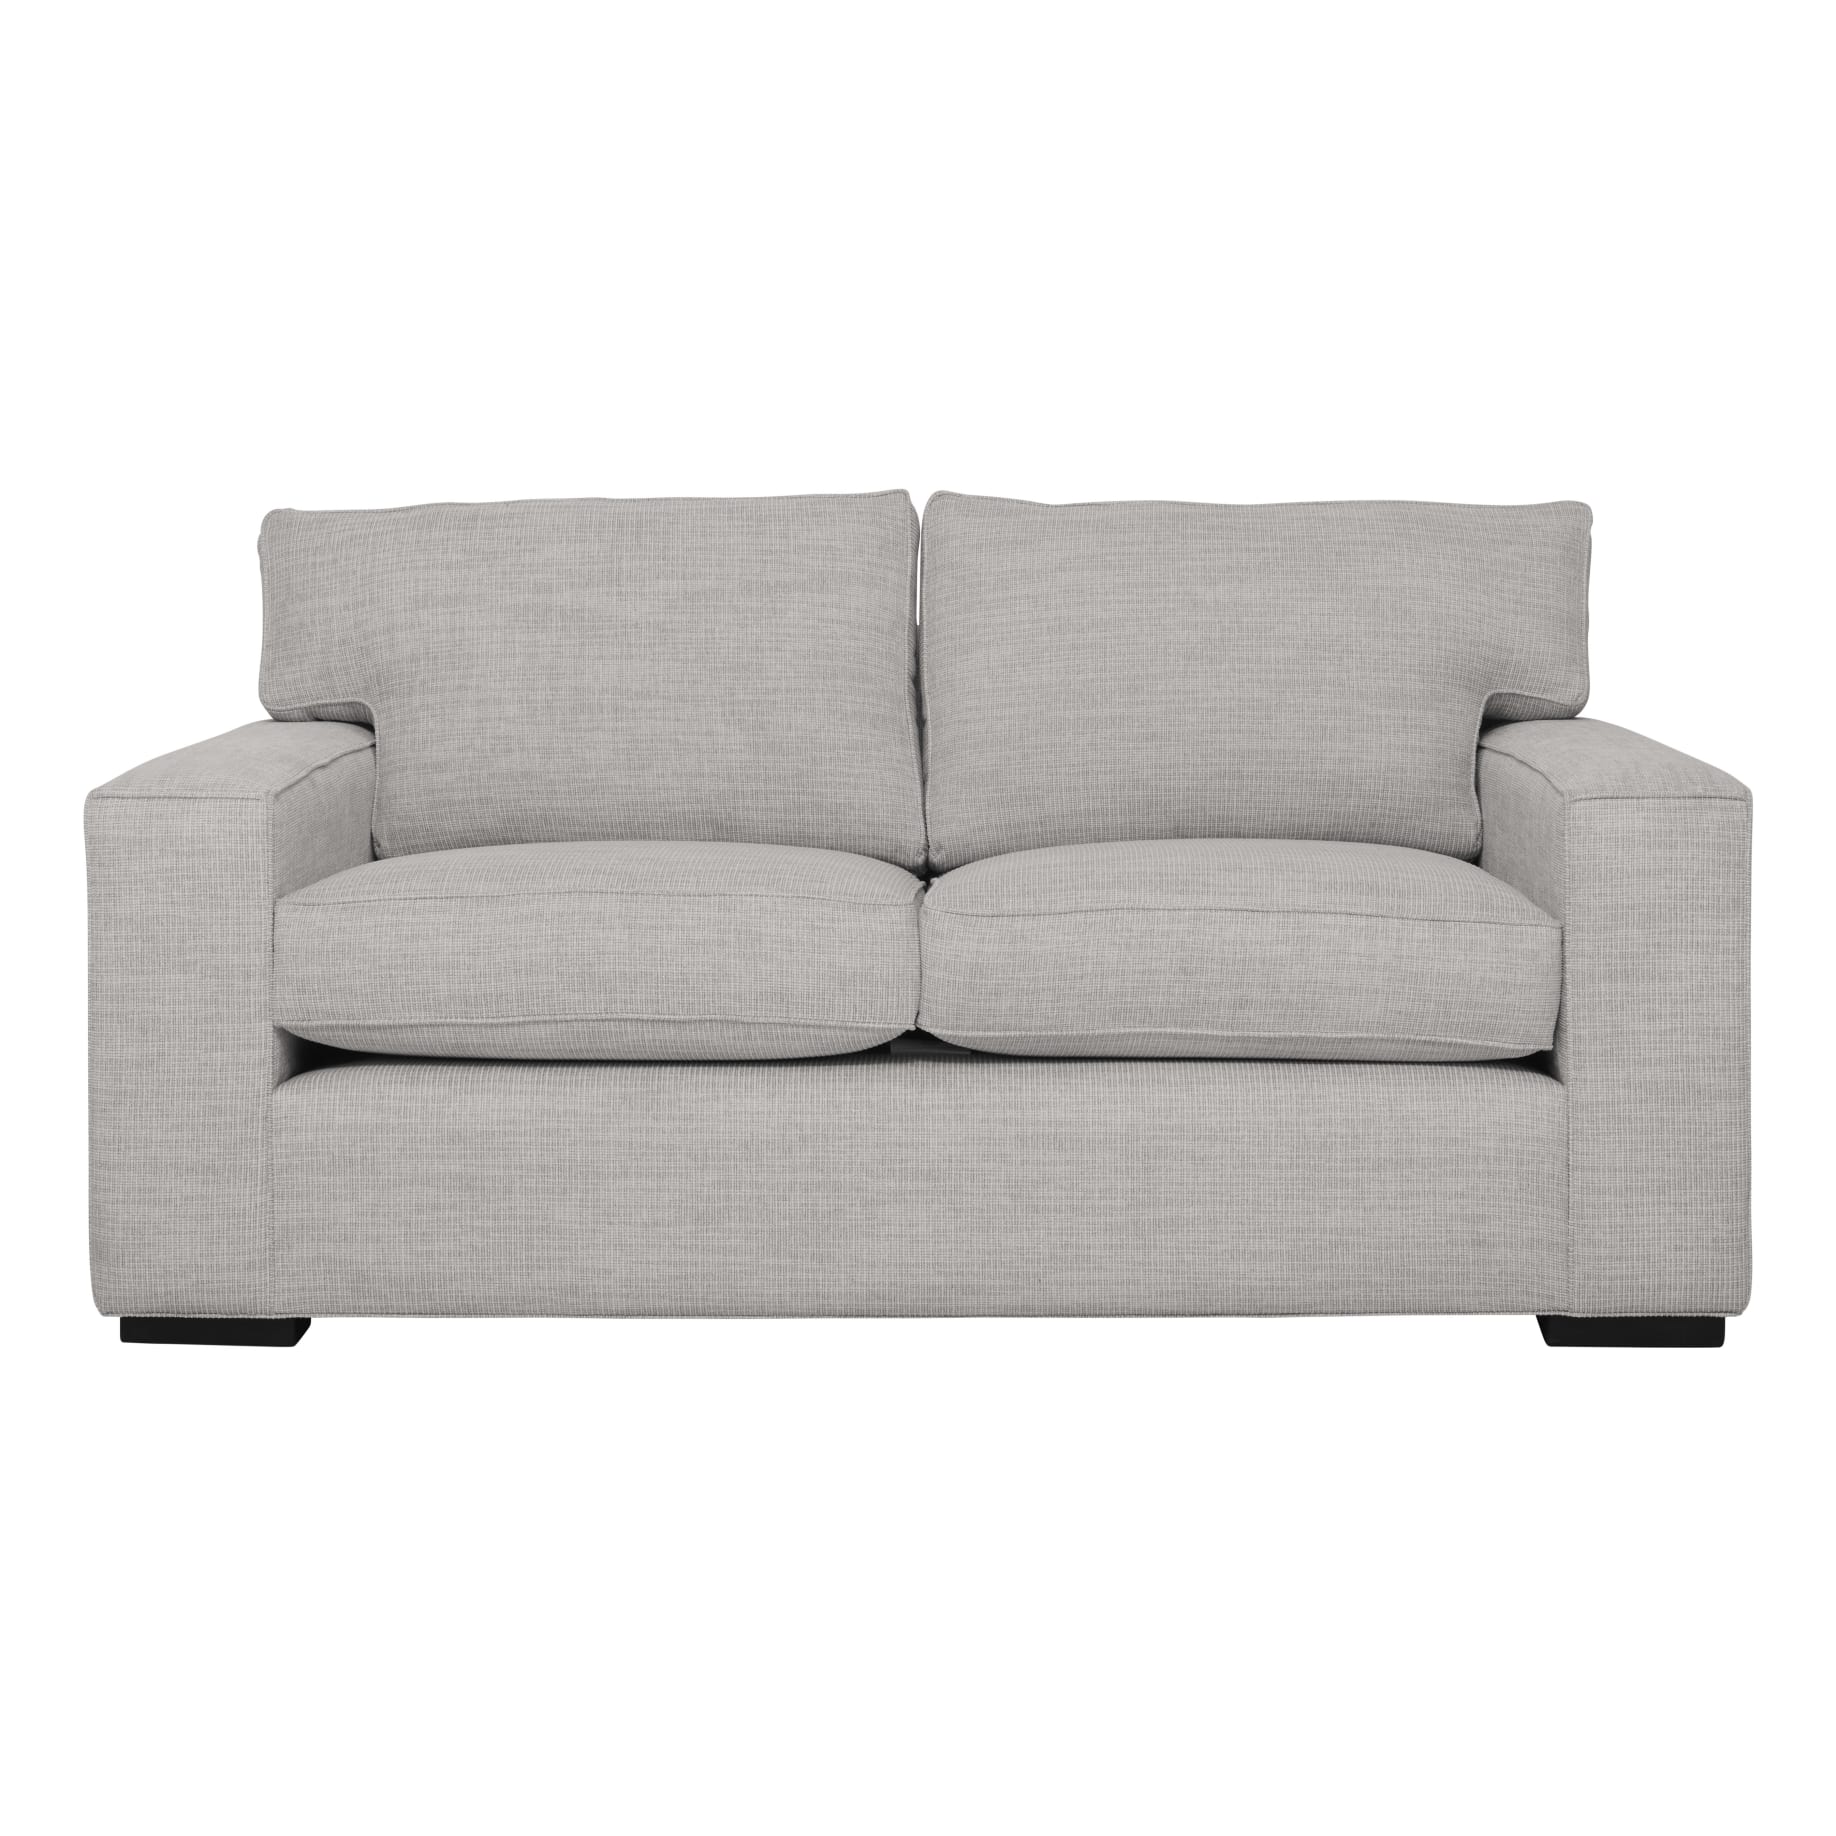 Ashton 2 Seater Sofa in Selected Fabrics